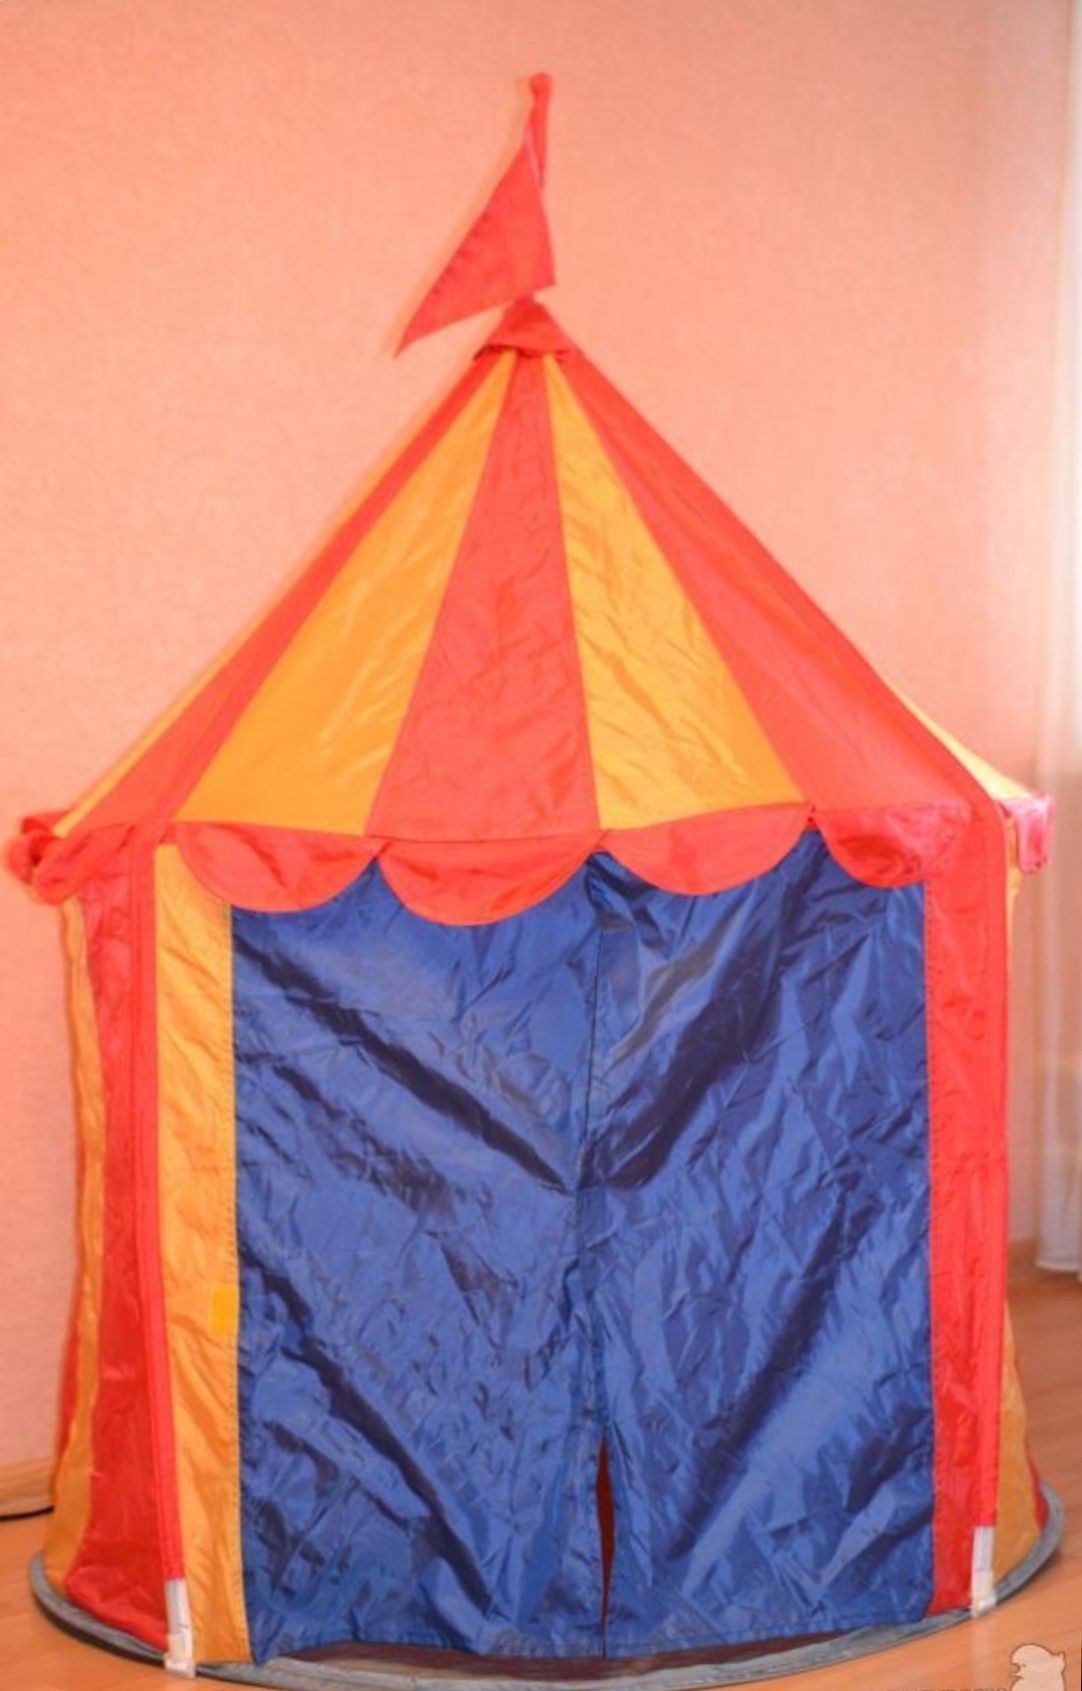 Домик шатер для детей